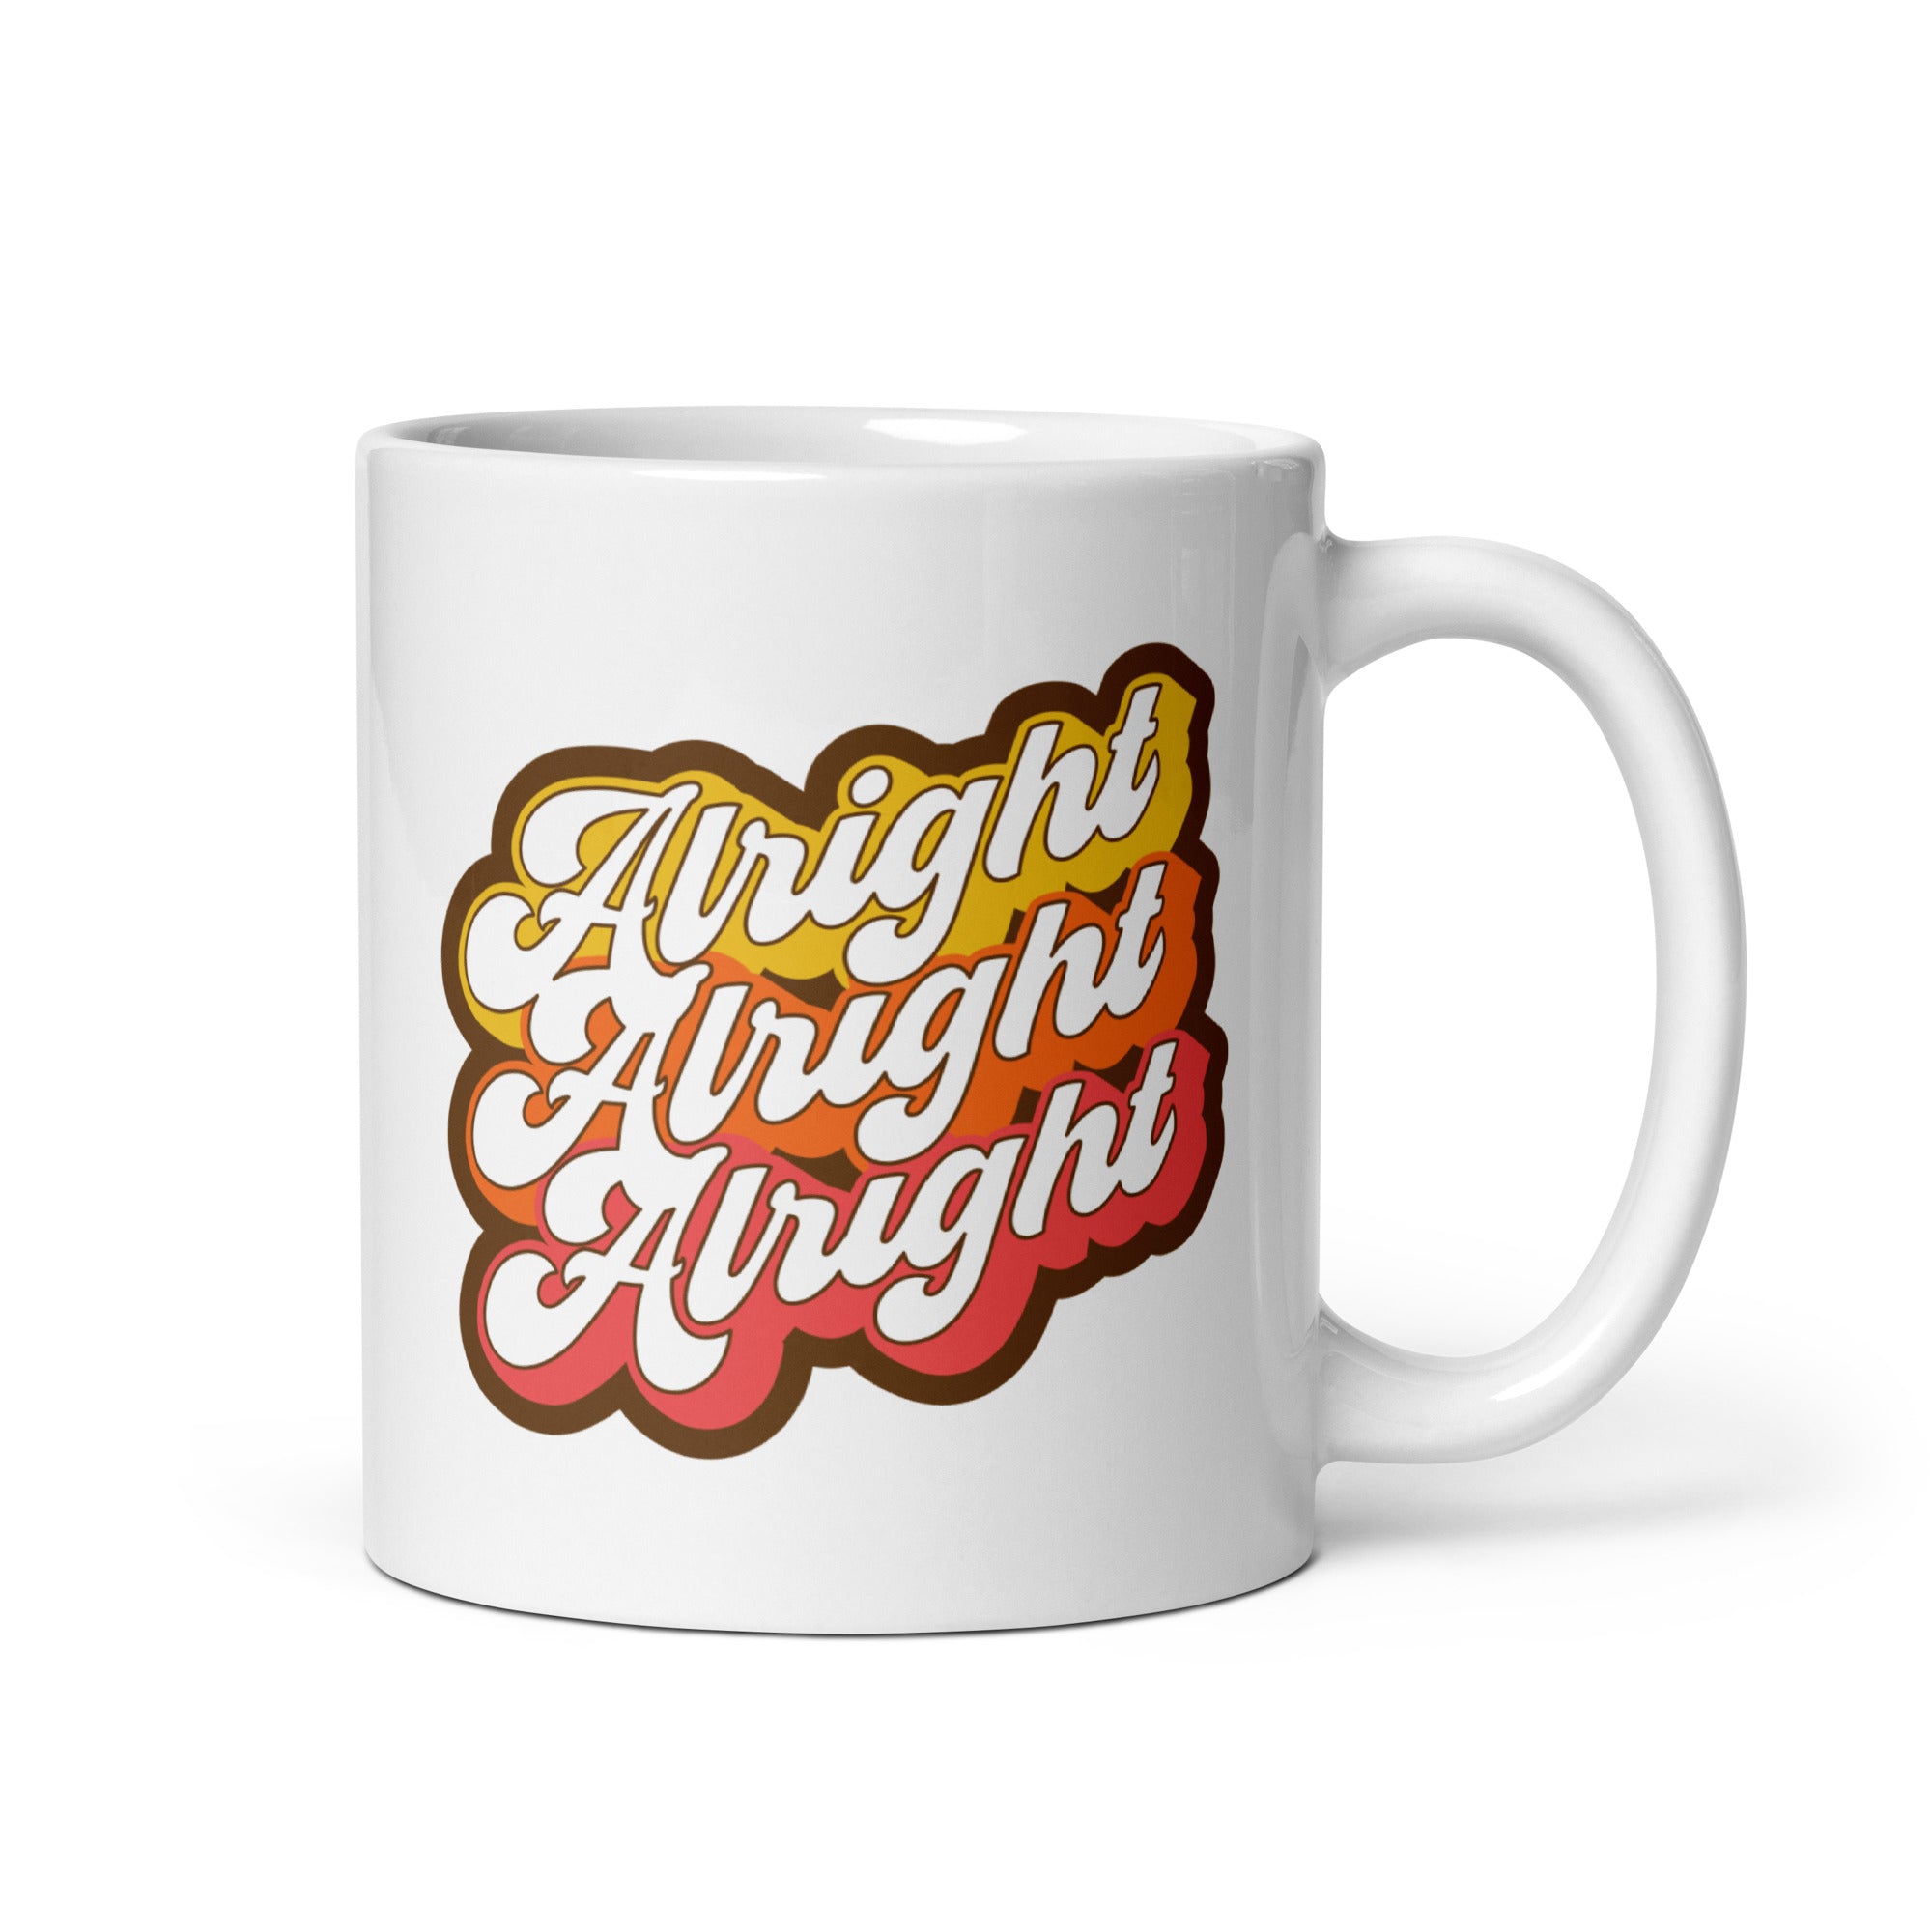 Alright Alright Alright - 11oz Coffee Mug